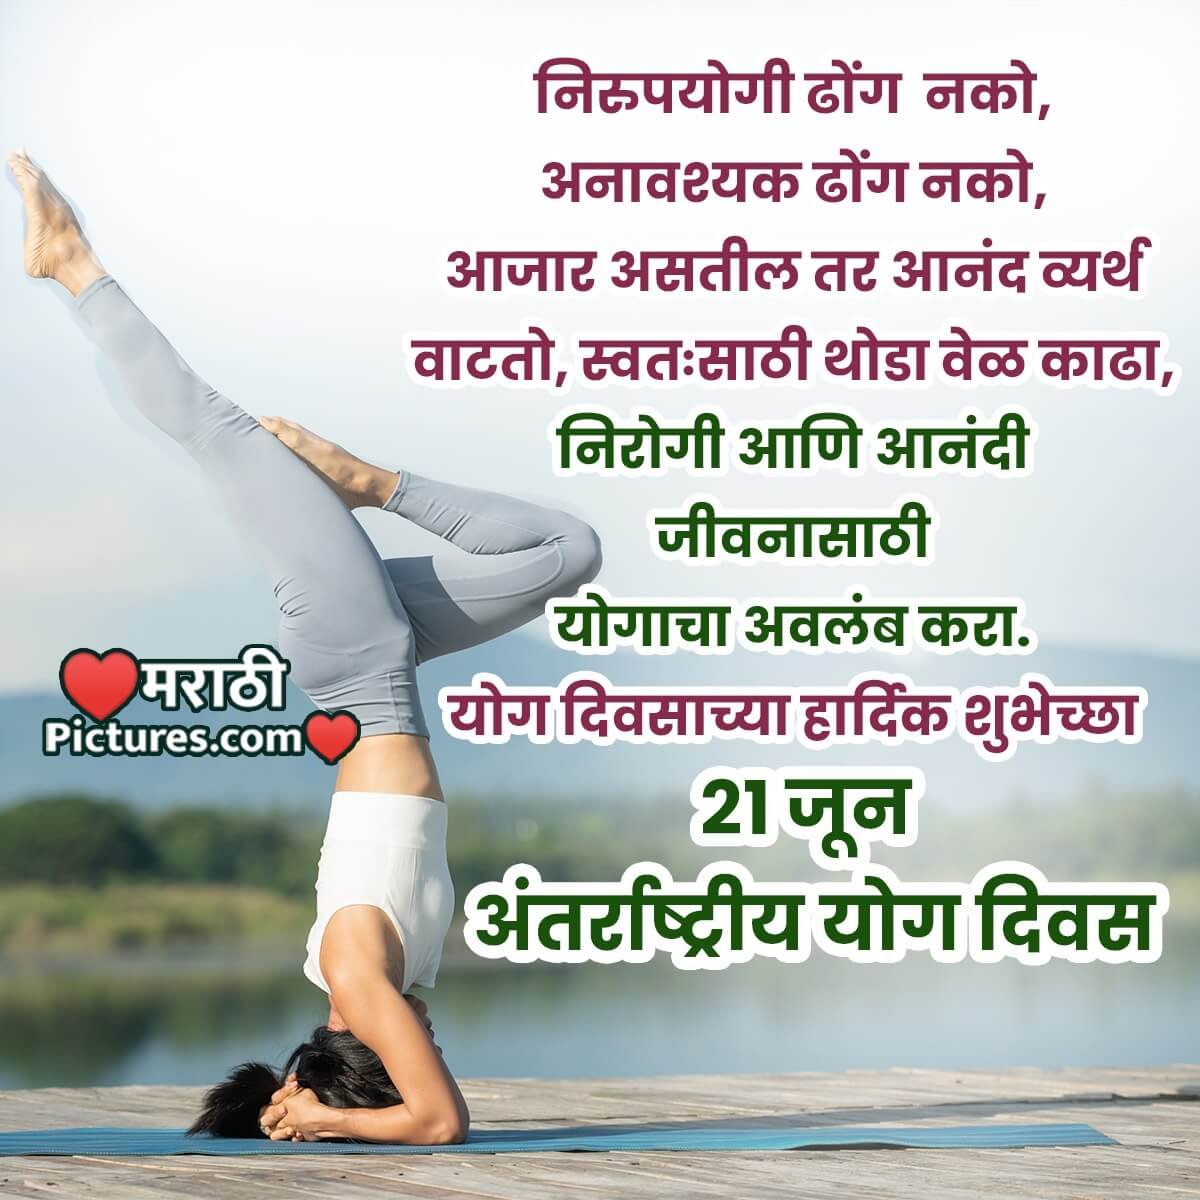 21 June International Yoga Day Wish